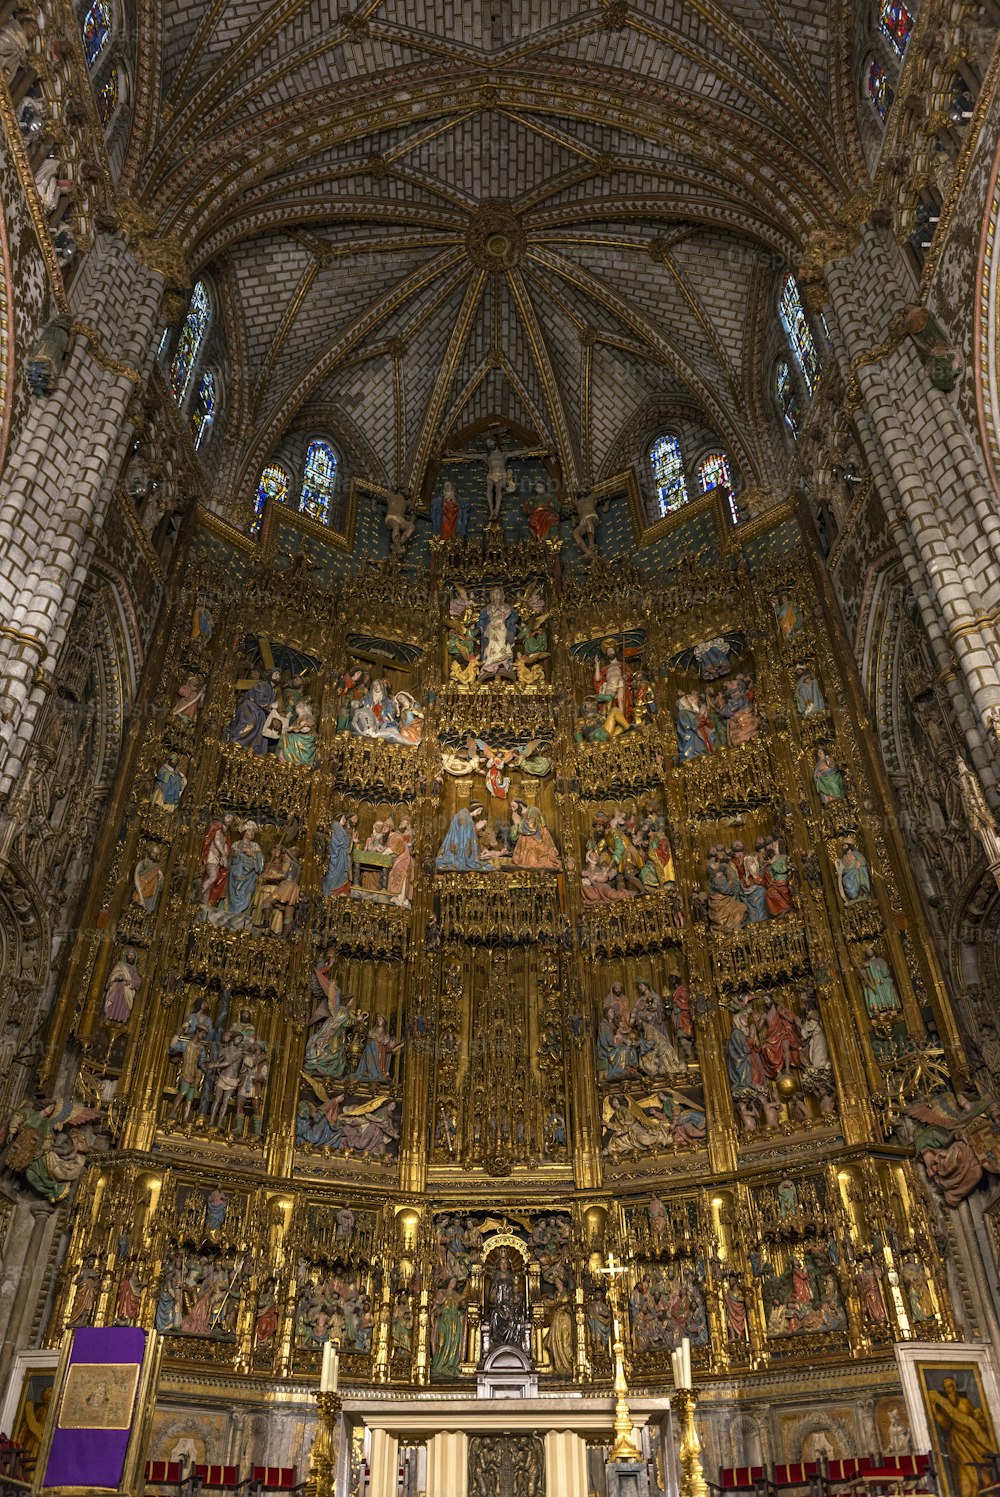 Veduta interna del retablo e dell'altare maggiore della Cattedrale di Toledo (Cattedrale Primaziale di Santa Maria di Toledo), una pala d'altare gotica estremamente florida e uno degli ultimi esempi di questo stile artistico. La cattedrale di Toledo è una delle tre cattedrali gotiche del XIII secolo in Spagna ed è considerata l'opera magna dello stile gotico in Spagna.